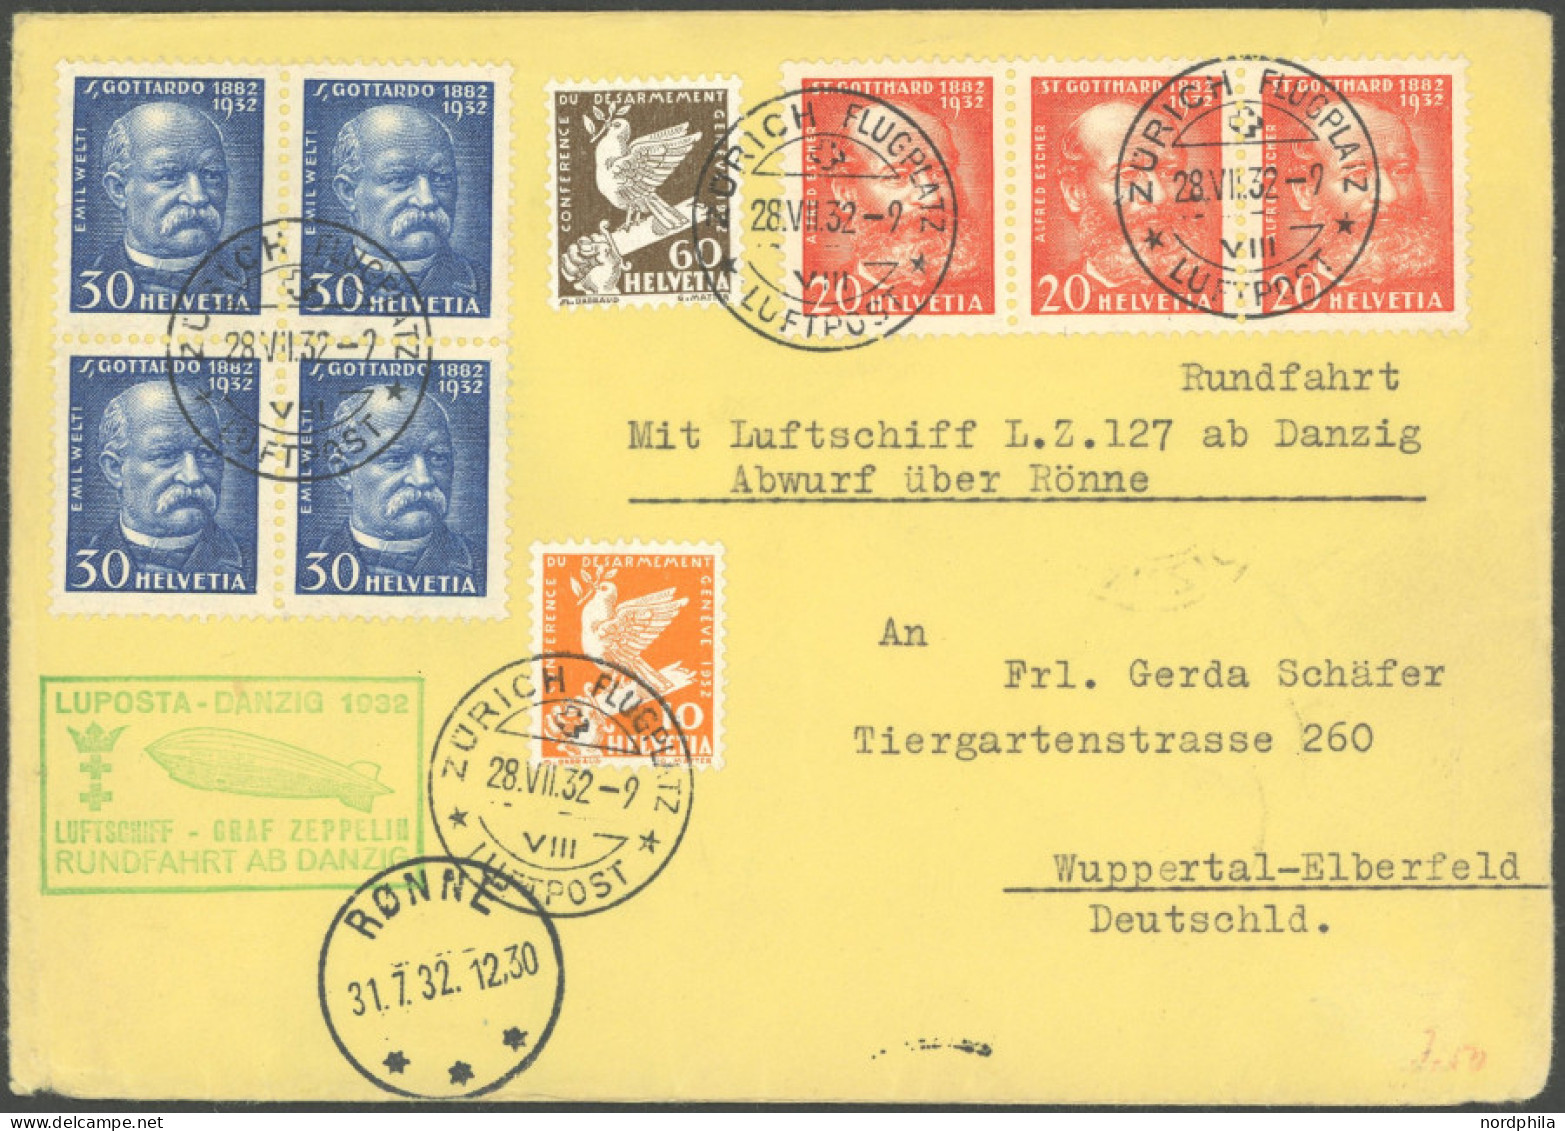 ZULEITUNGSPOST 170Aa BRIEF, Schweiz: 1932, Luposta-Rundfahrt, Abwurf Rönne, Leichte Beförderungsspuren, Prachtbrief - Airmail & Zeppelin